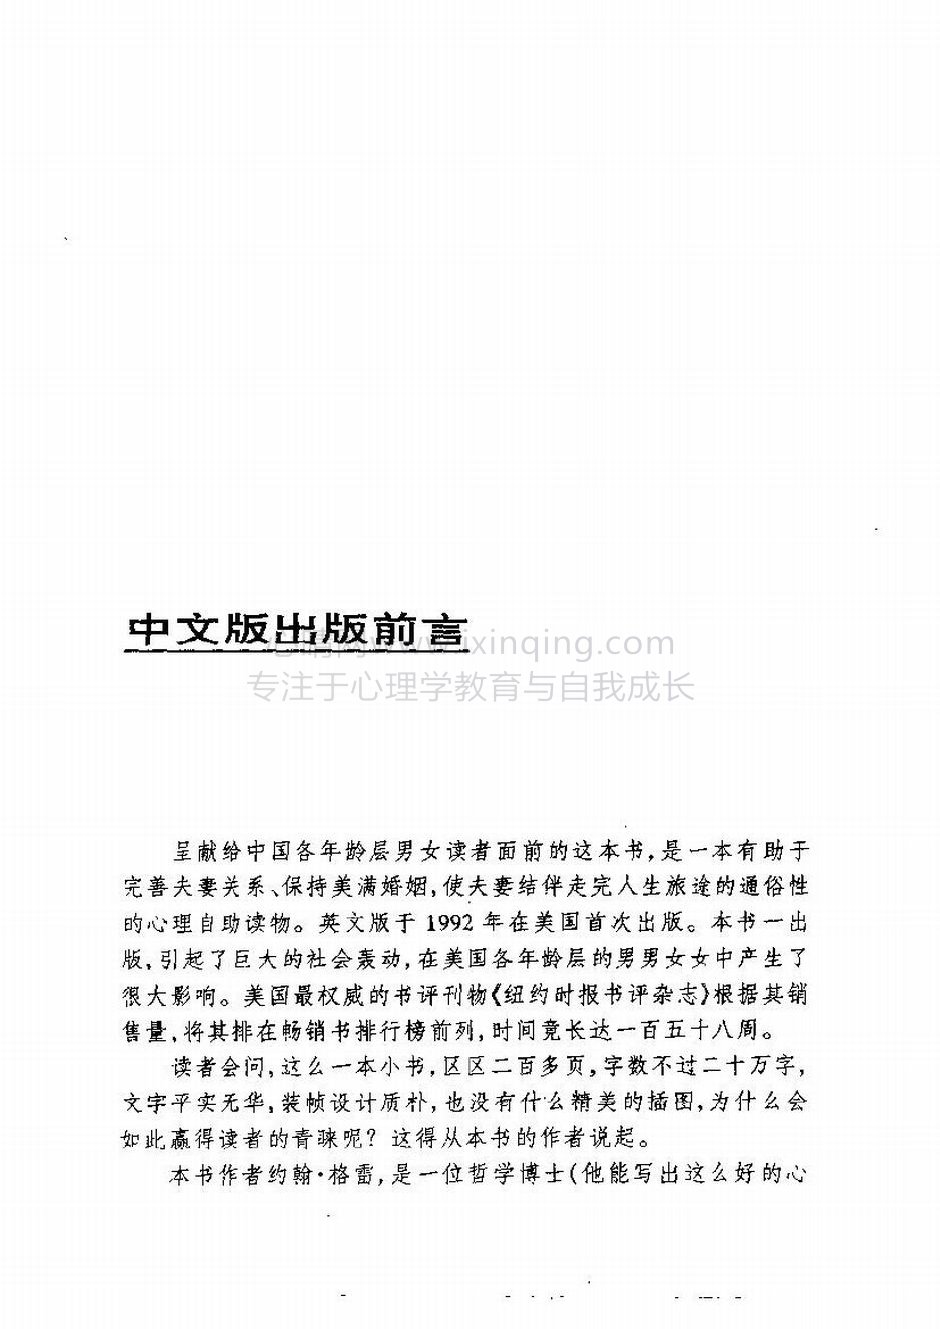 封面、原序、译序、中文版出版前言(5)